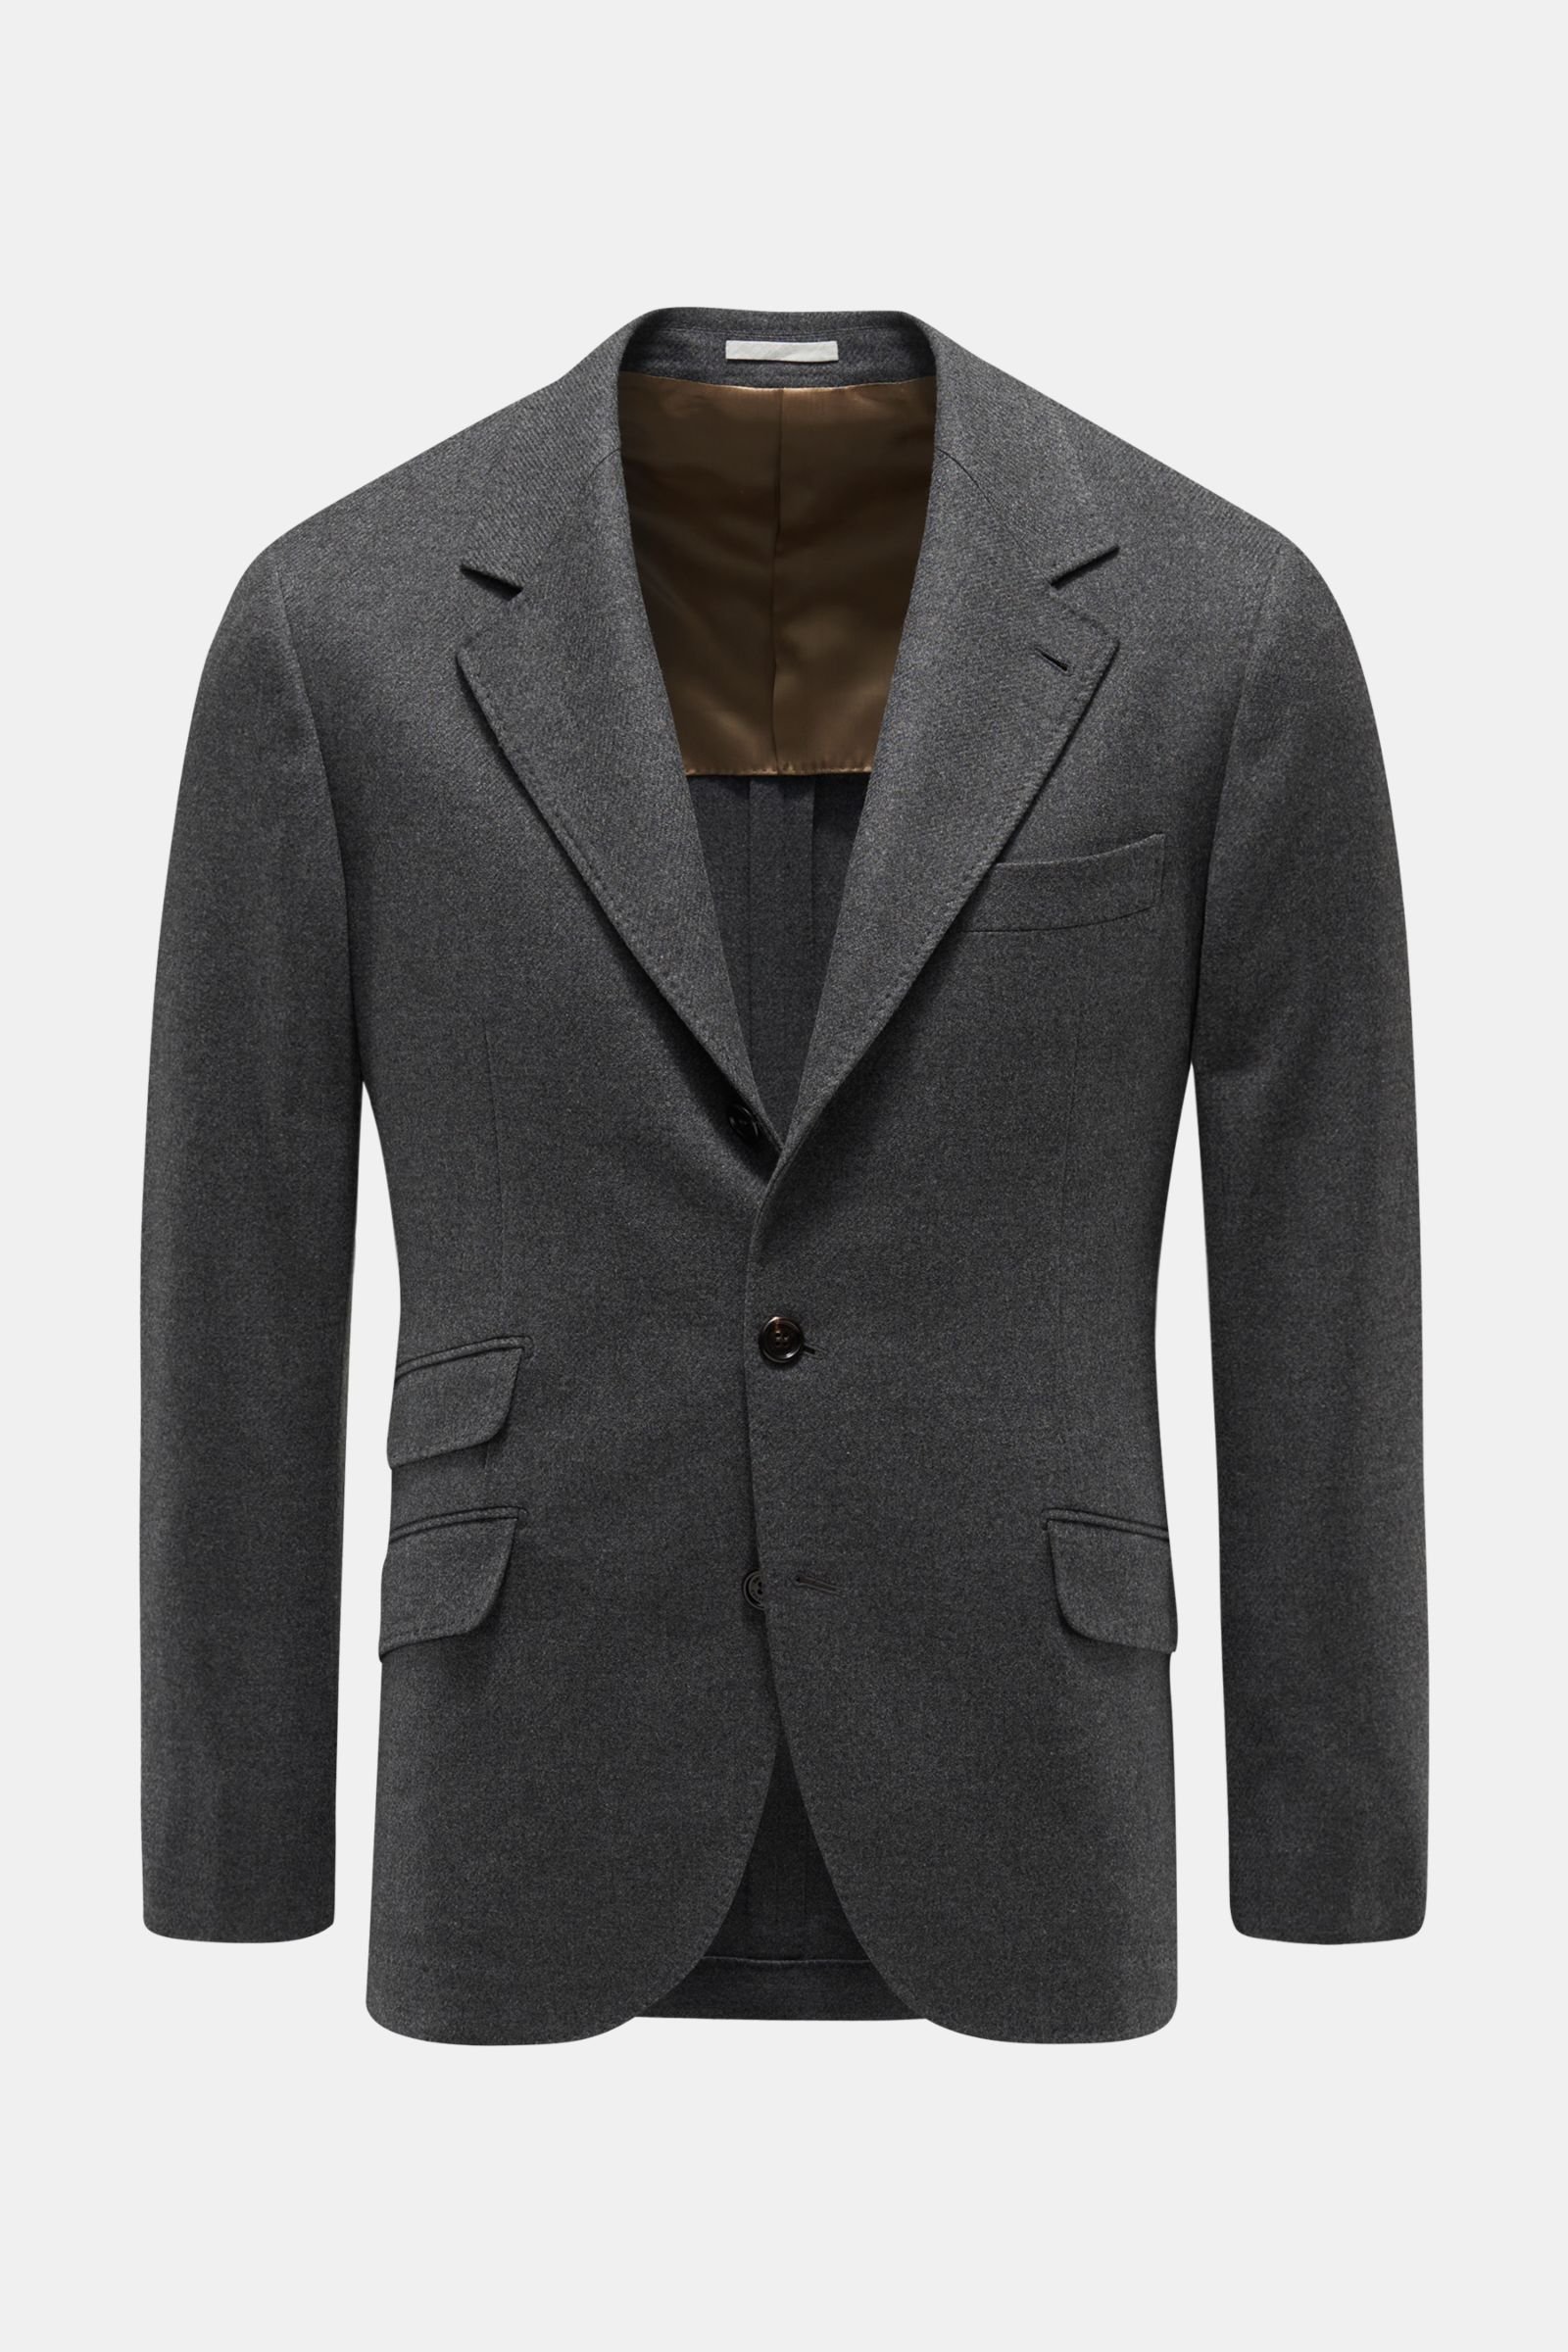 Smart-casual jacket dark grey 